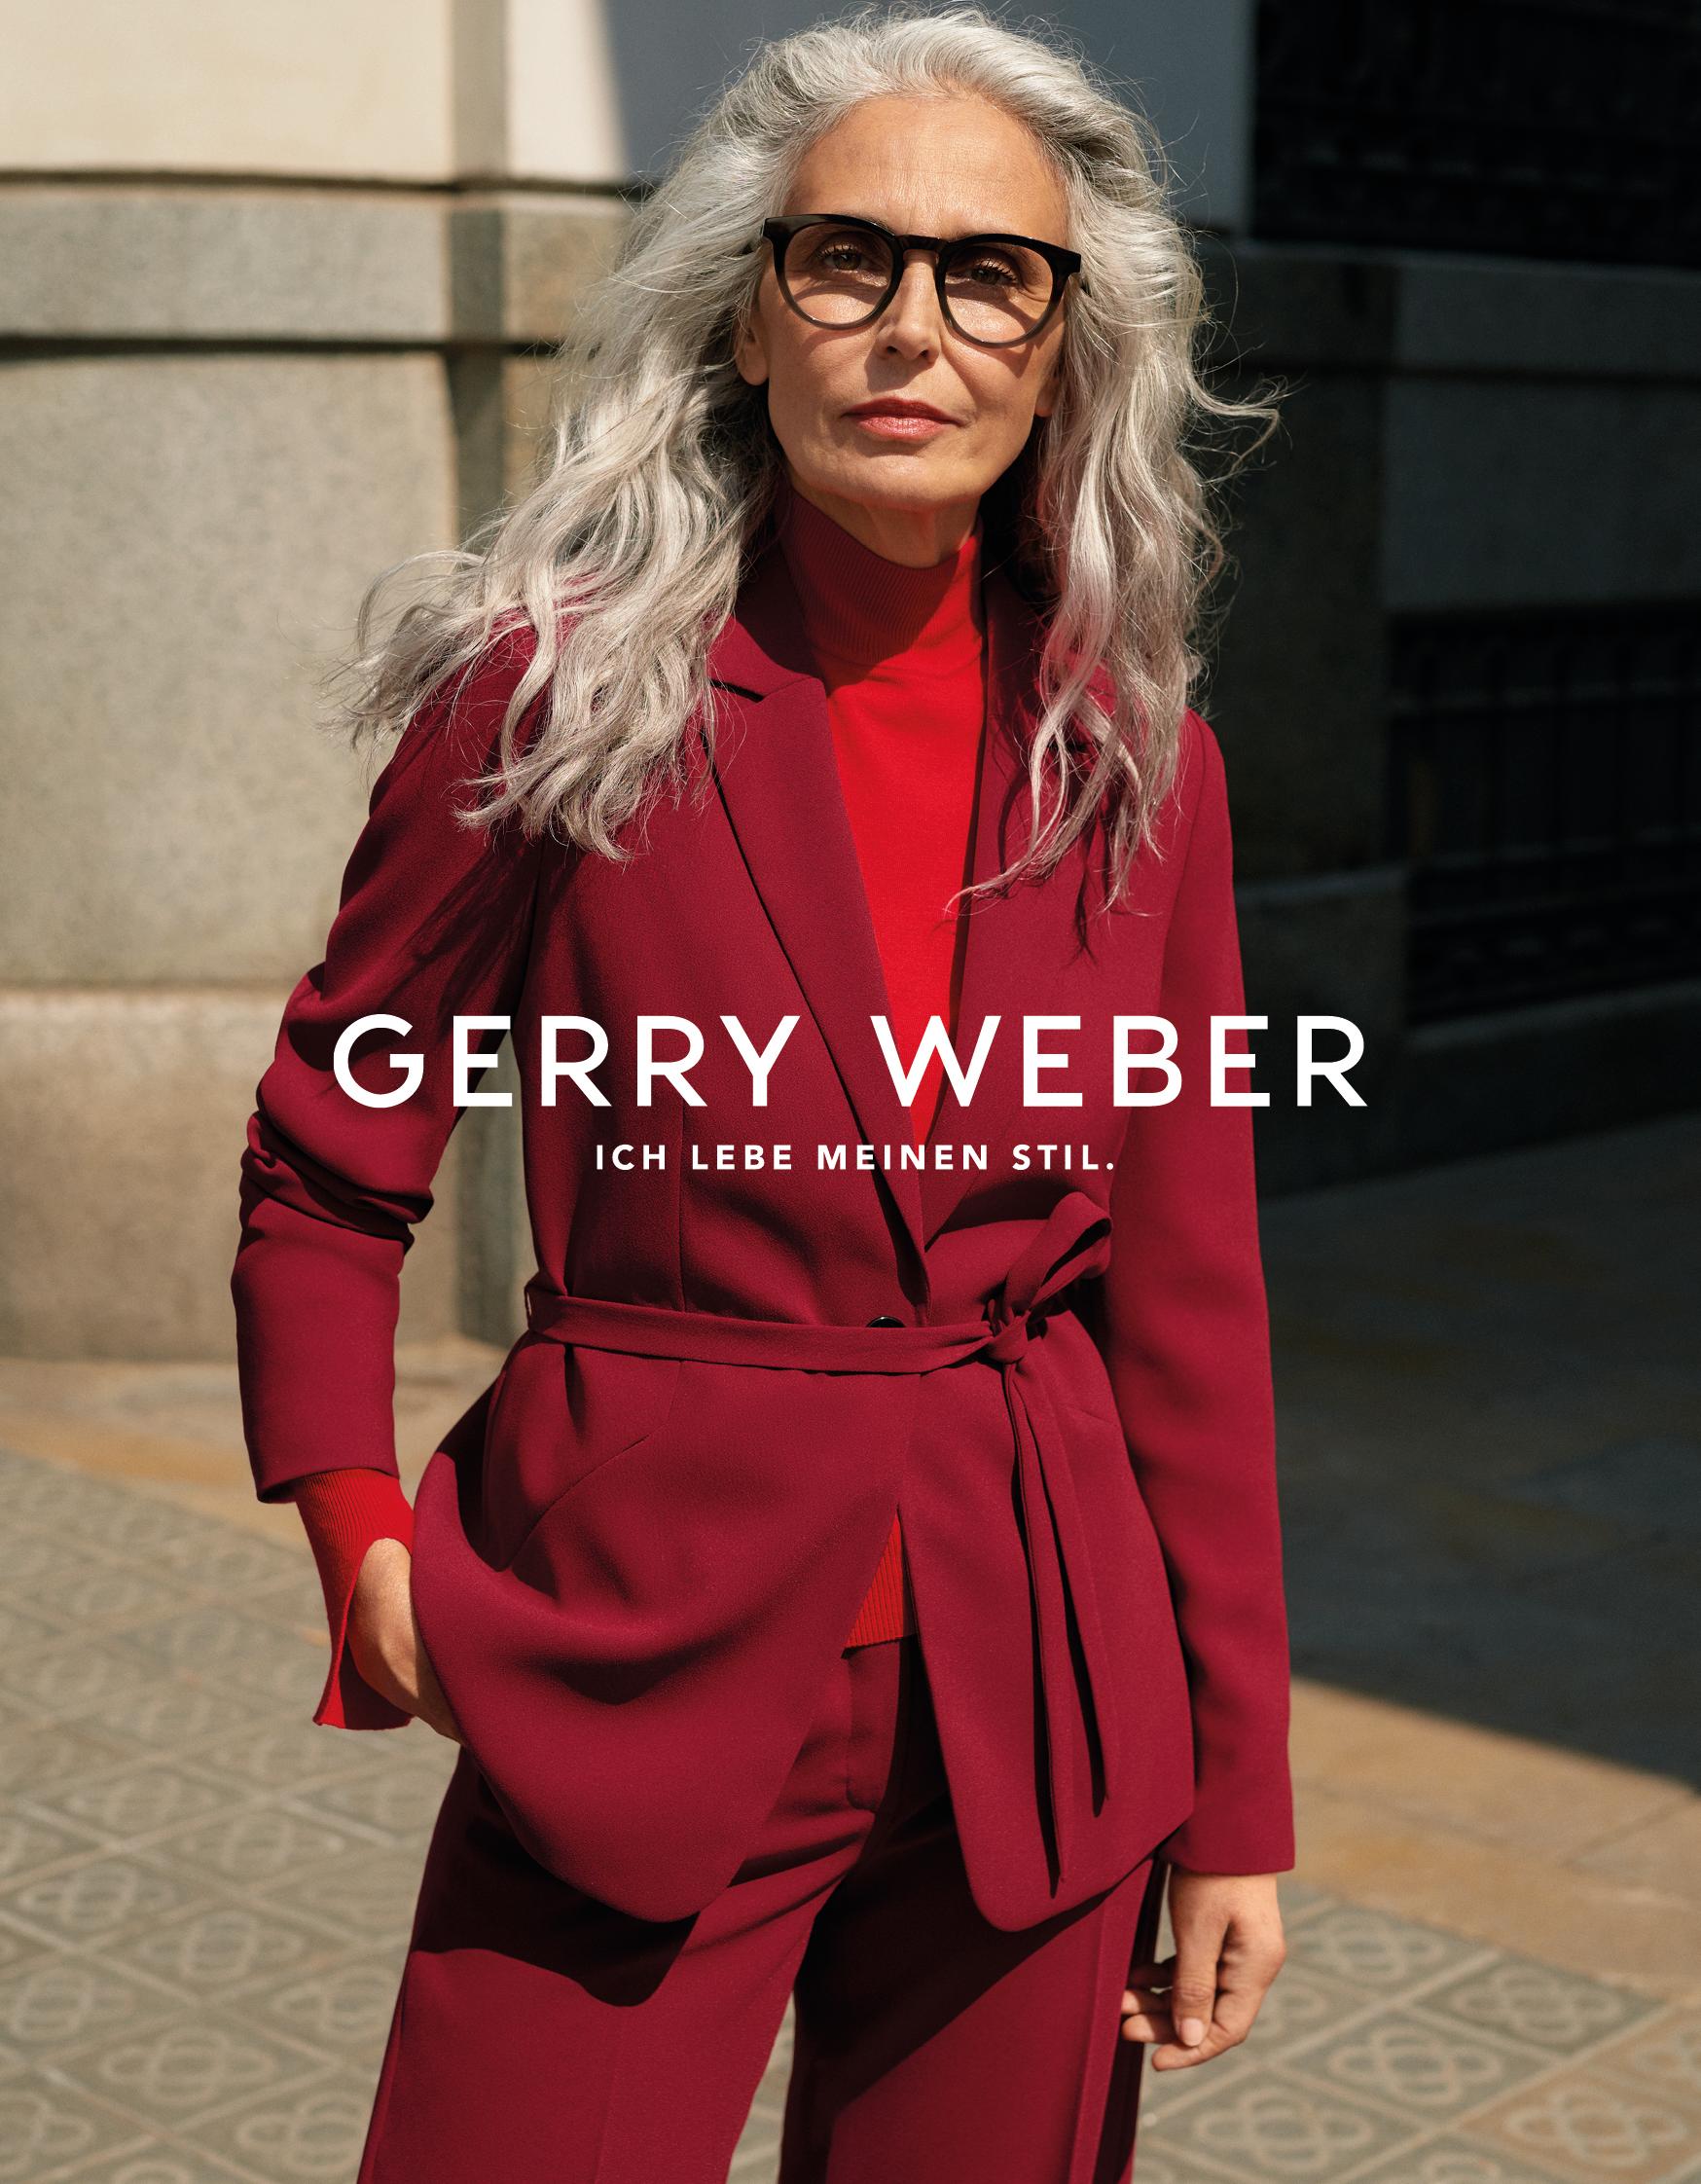 Feest Graf Decoratief GERRY WEBER wirbt erstmalig mit Best-Ager-Model und startet optimistisch  mit breit ... | Presseportal